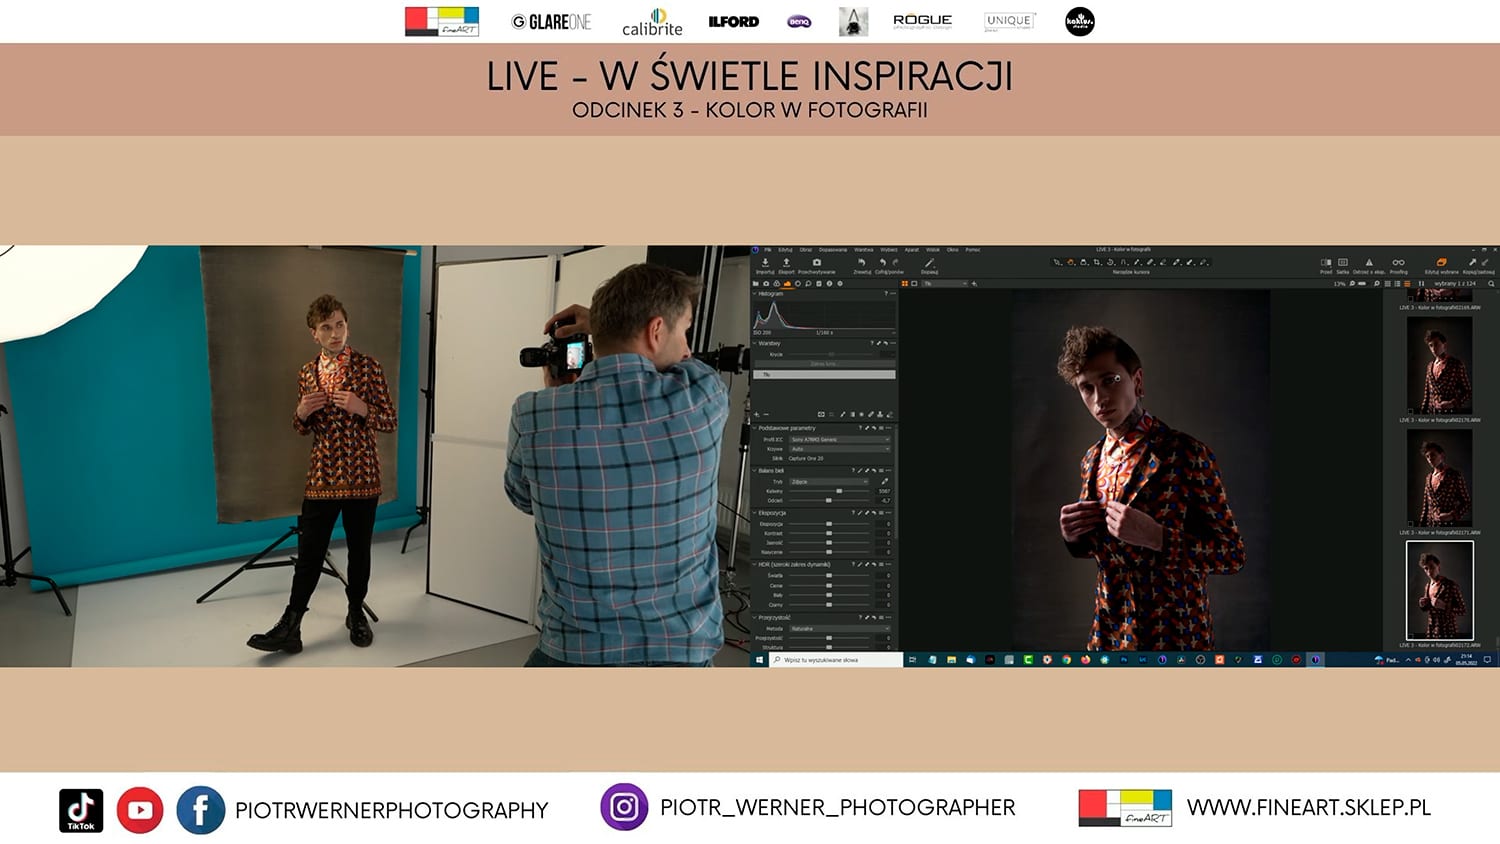 Widok podwójnego ekranu podczas transmisji online ze studia fotograficznego; po lewej fotograf z modelem, po prawej widok gotowego zdjęcia